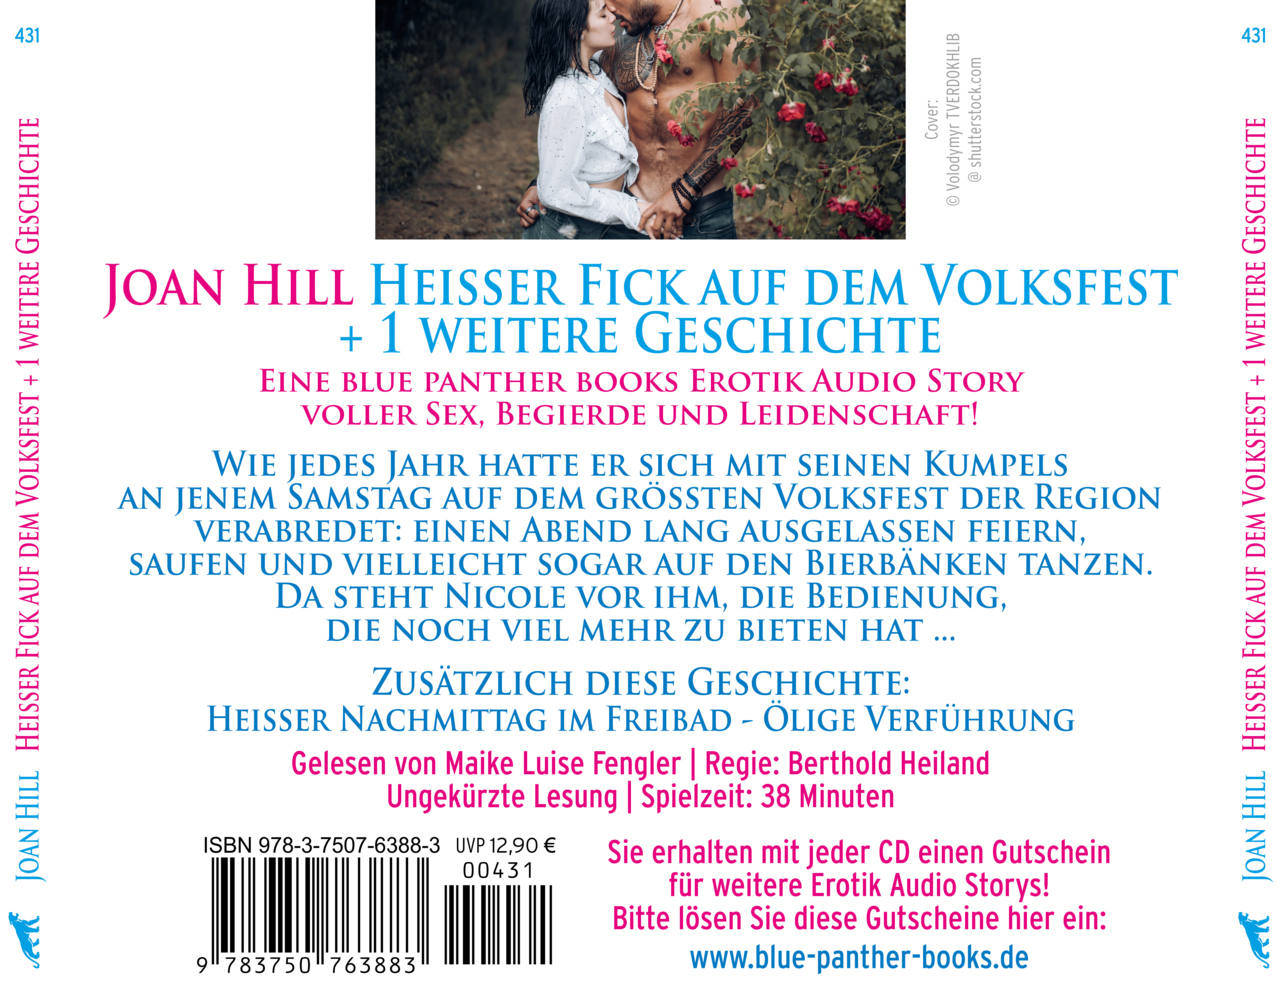 Bild: 9783750763883 | Heißer Fick auf dem Volksfest Erotische Geschichte Audio CD, Audio-CD